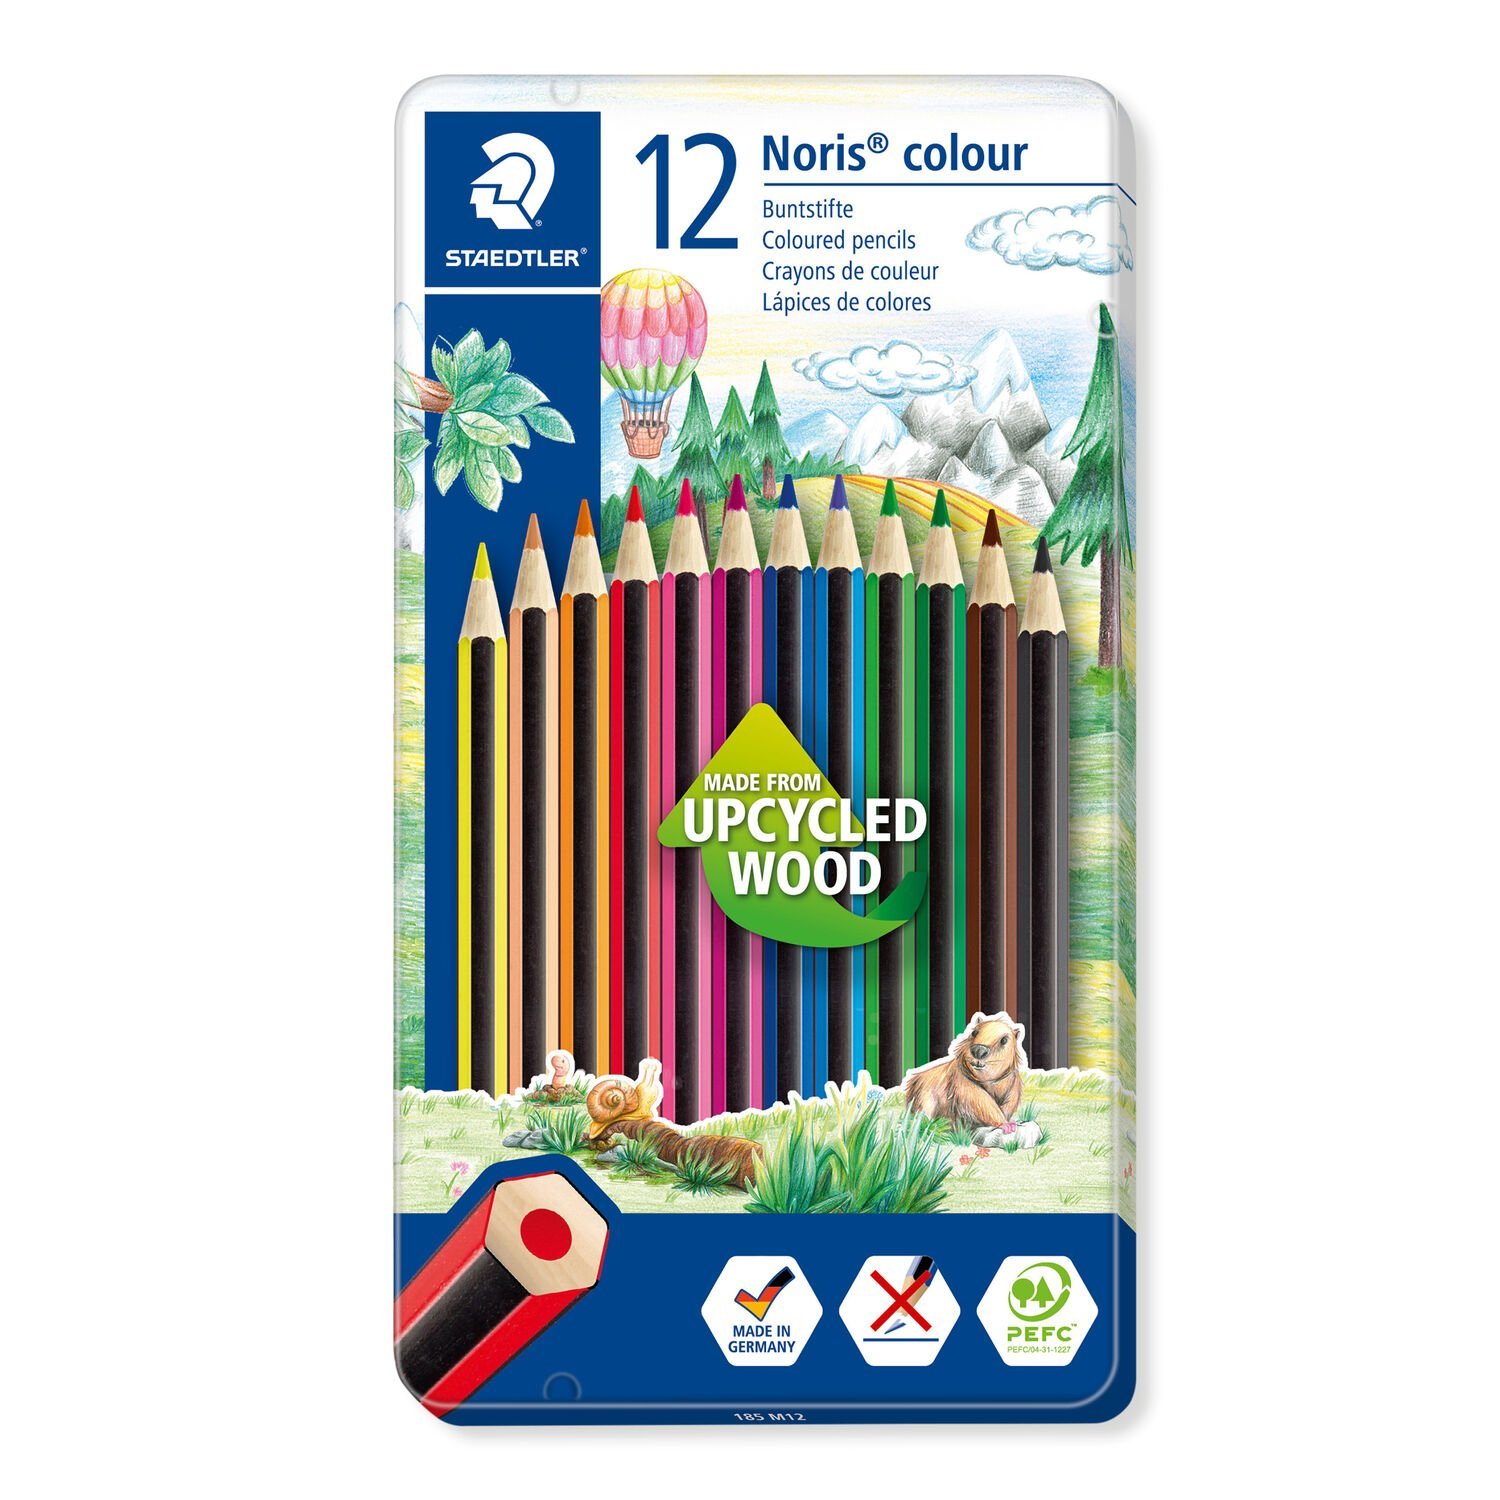 Metalletui mit 12 Buntstiften in sortierten Farben